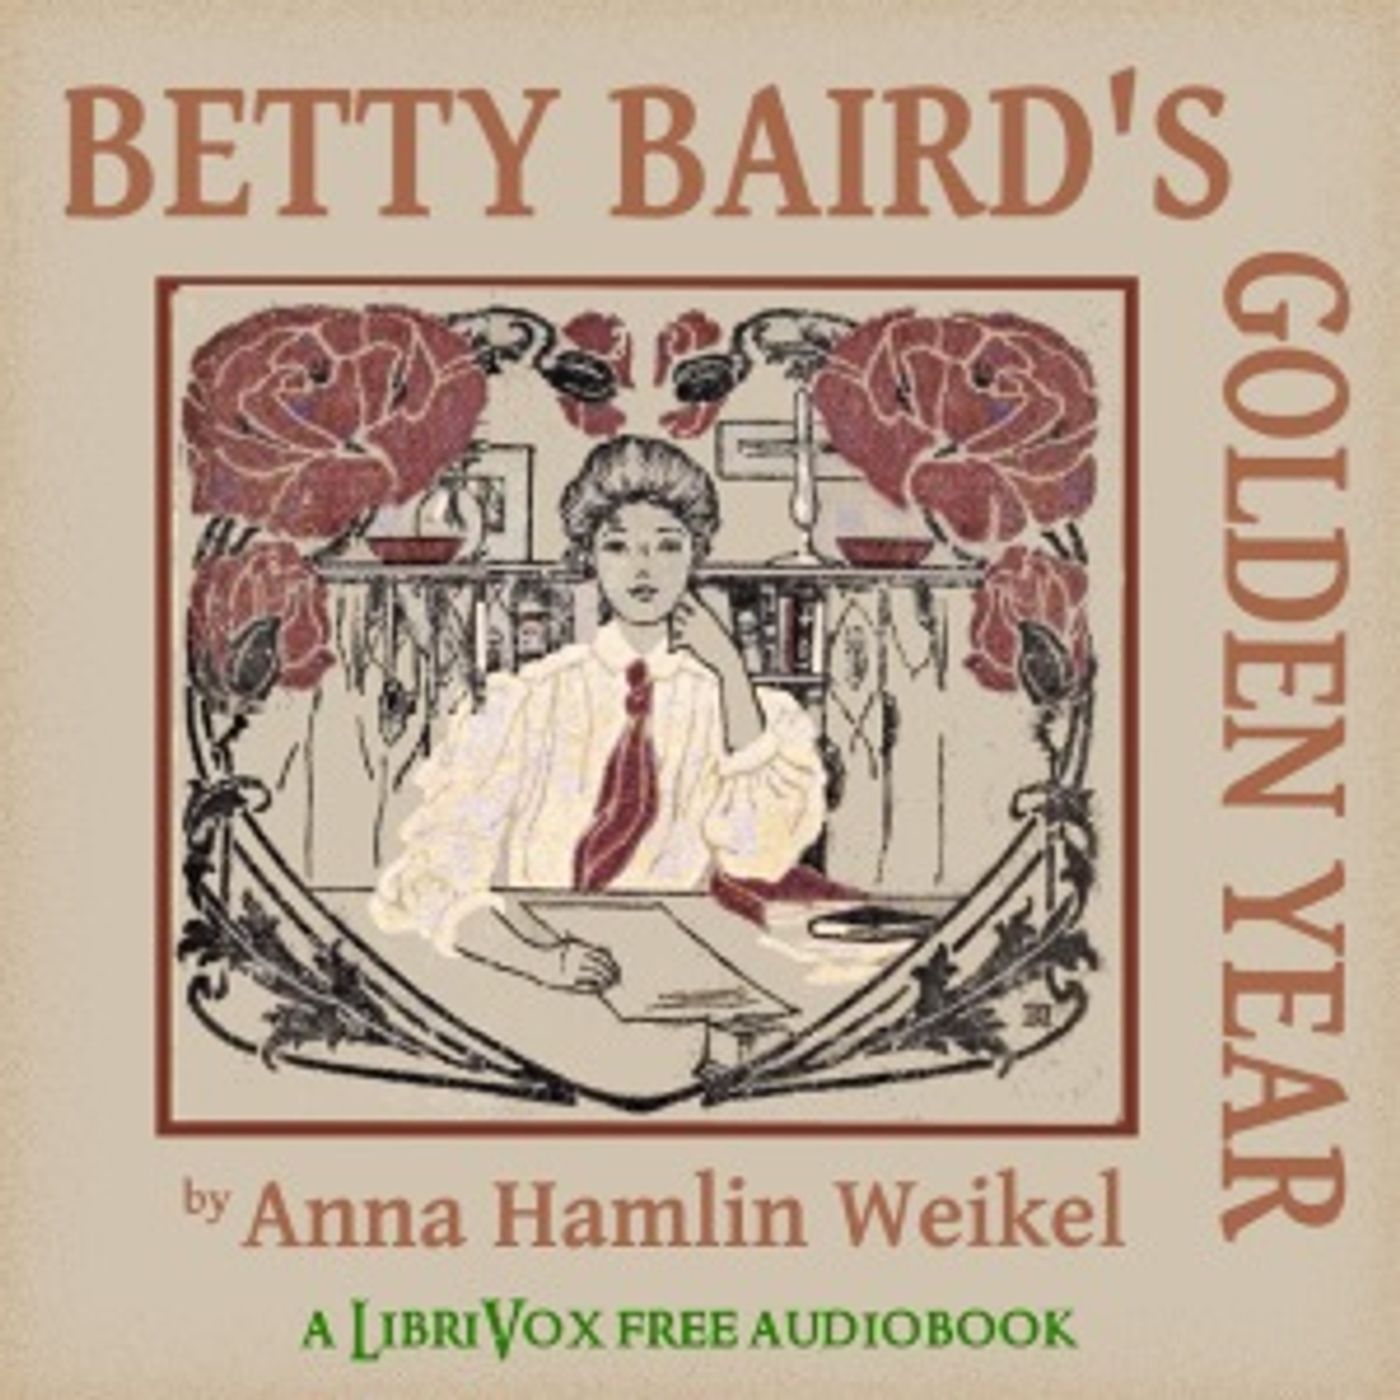 Betty Baird’s Golden Year by Anna Hamlin Weikel (1865 – 1923)